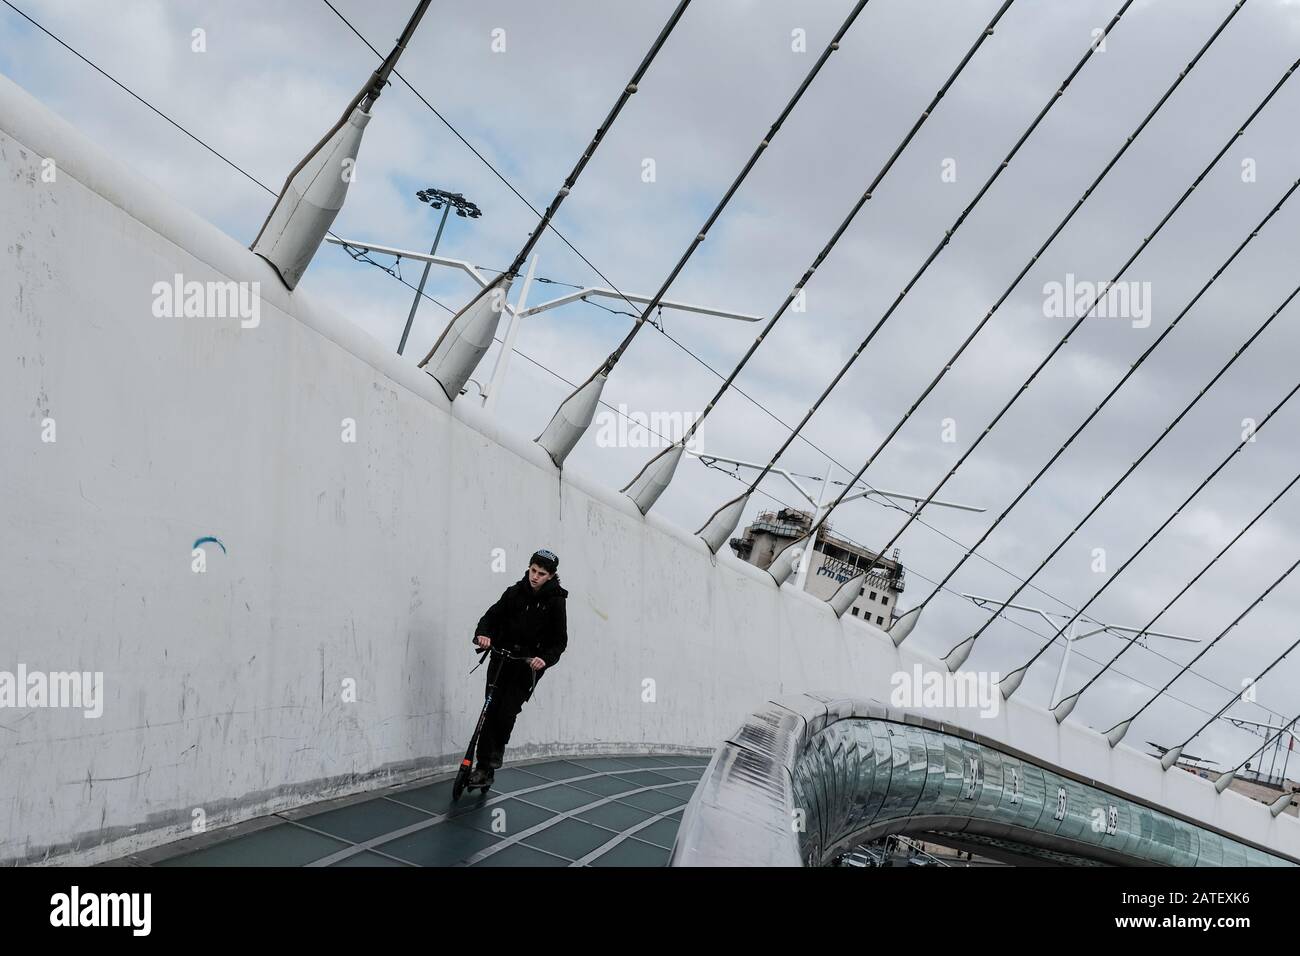 Jerusalem, Israel. Februar 2020. Ein junger Mann fährt mit einem Roller auf der Chords Bridge von Jerusalem, auch "Brücke der Saiten" genannt, die vom spanischen Architekten Santiago Calatrava entworfen und 2008 eingeweiht wurde. Gutschrift: Nir Alon/Alamy Live News. Stockfoto